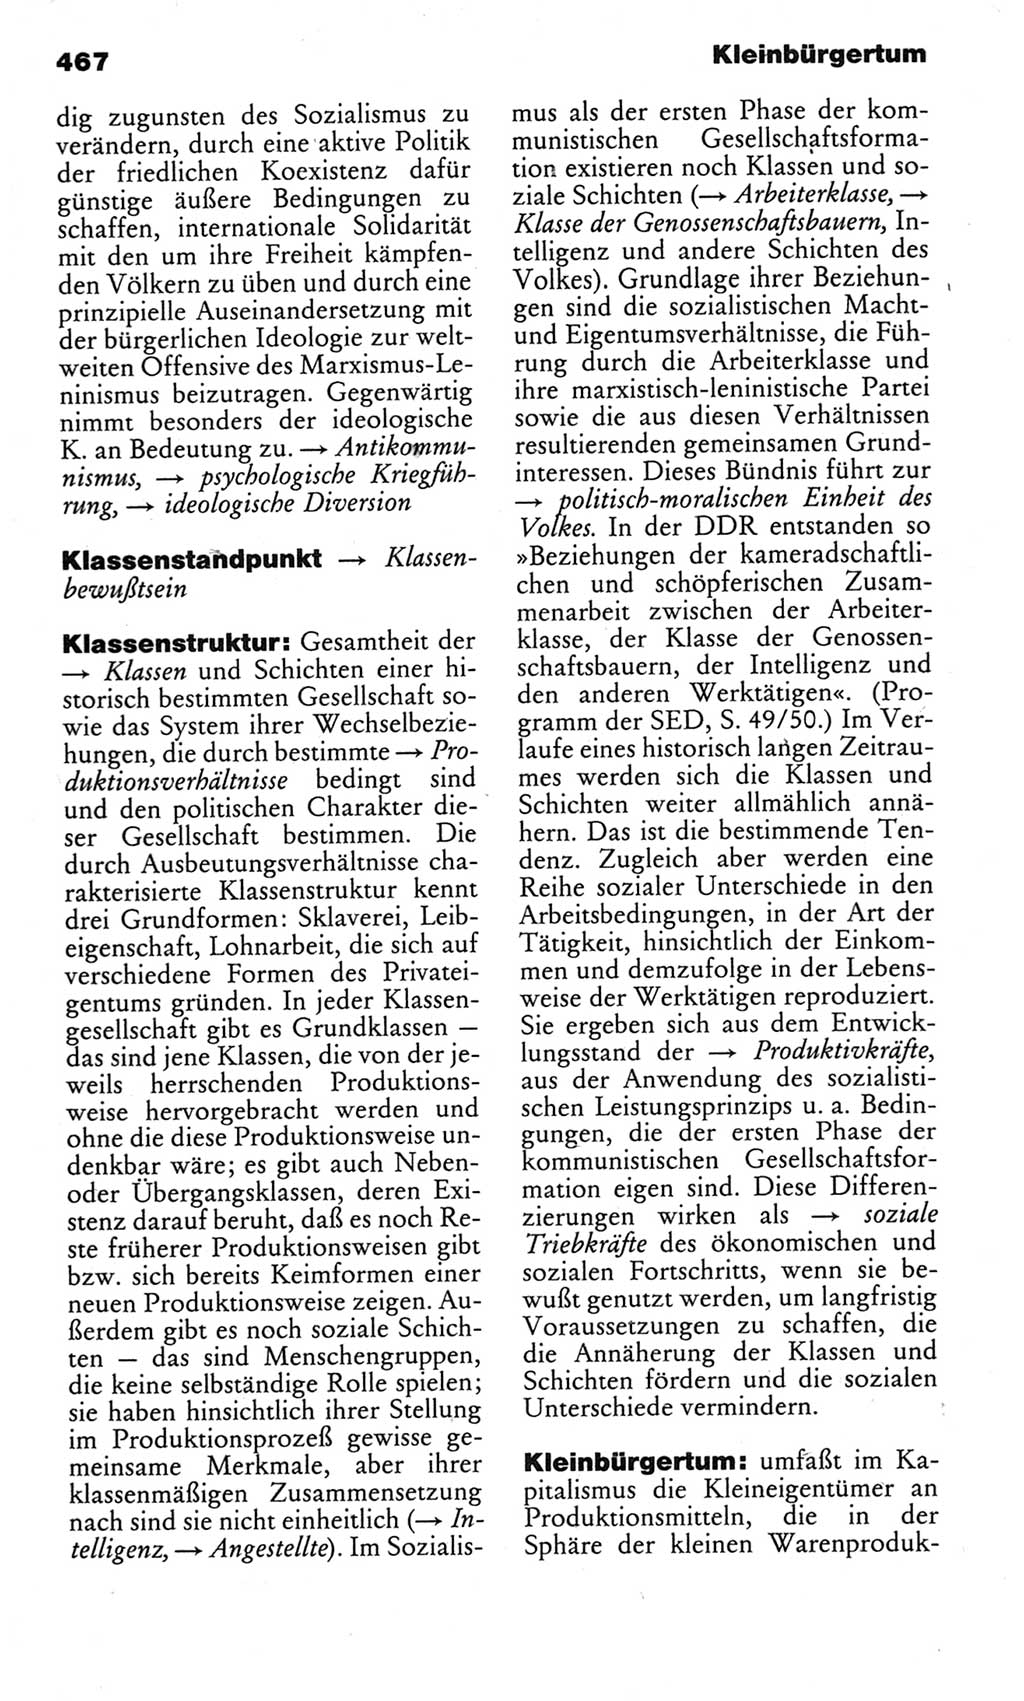 Kleines politisches Wörterbuch [Deutsche Demokratische Republik (DDR)] 1983, Seite 467 (Kl. pol. Wb. DDR 1983, S. 467)